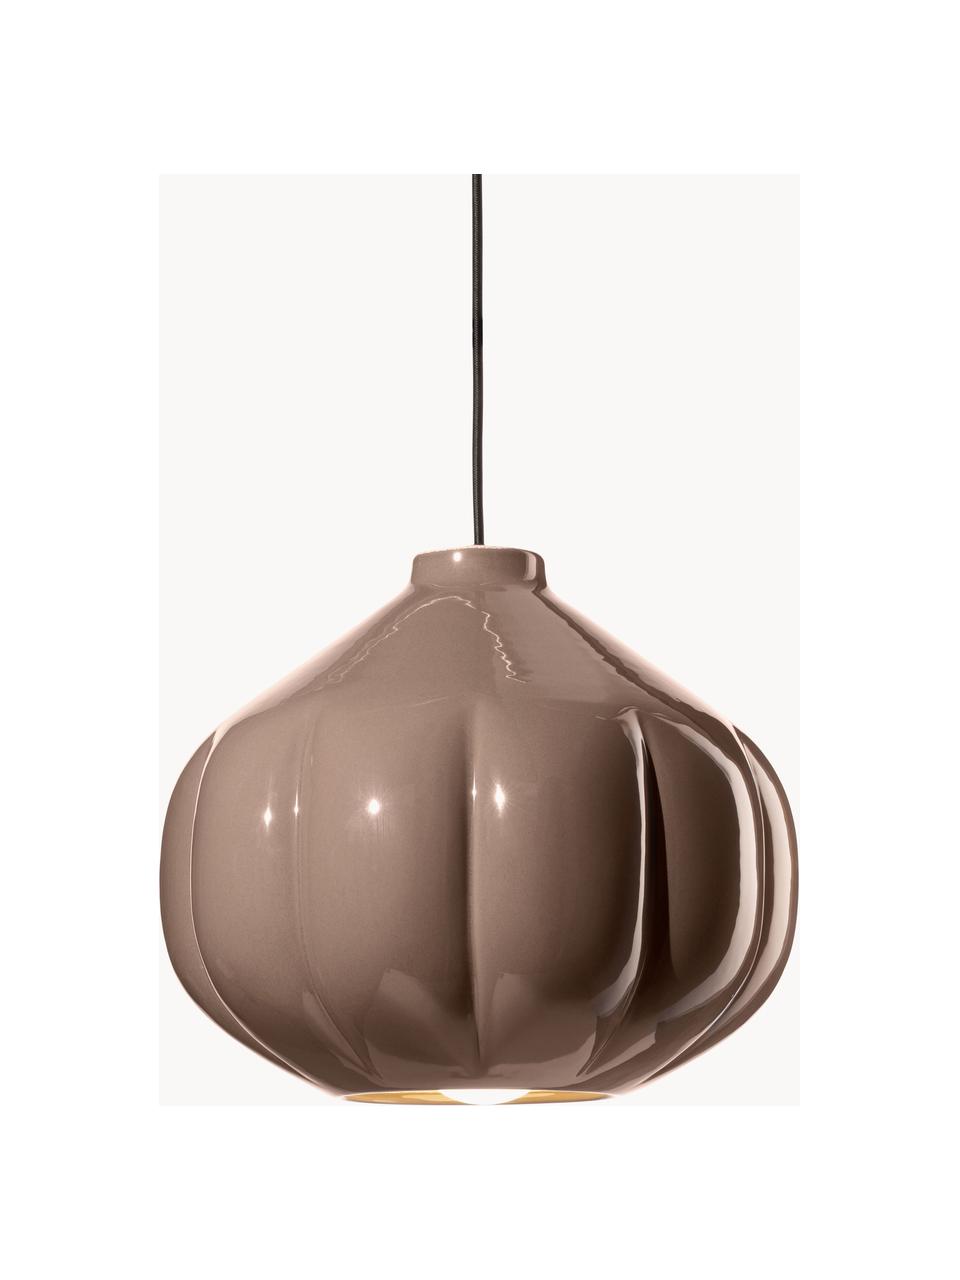 Lámpara de techo artesanal Afoxe, Pantalla: cerámica, Anclaje: metal recubierto, Cable: cubierto en tela, Turrón, Ø 34 x Al 30 cm